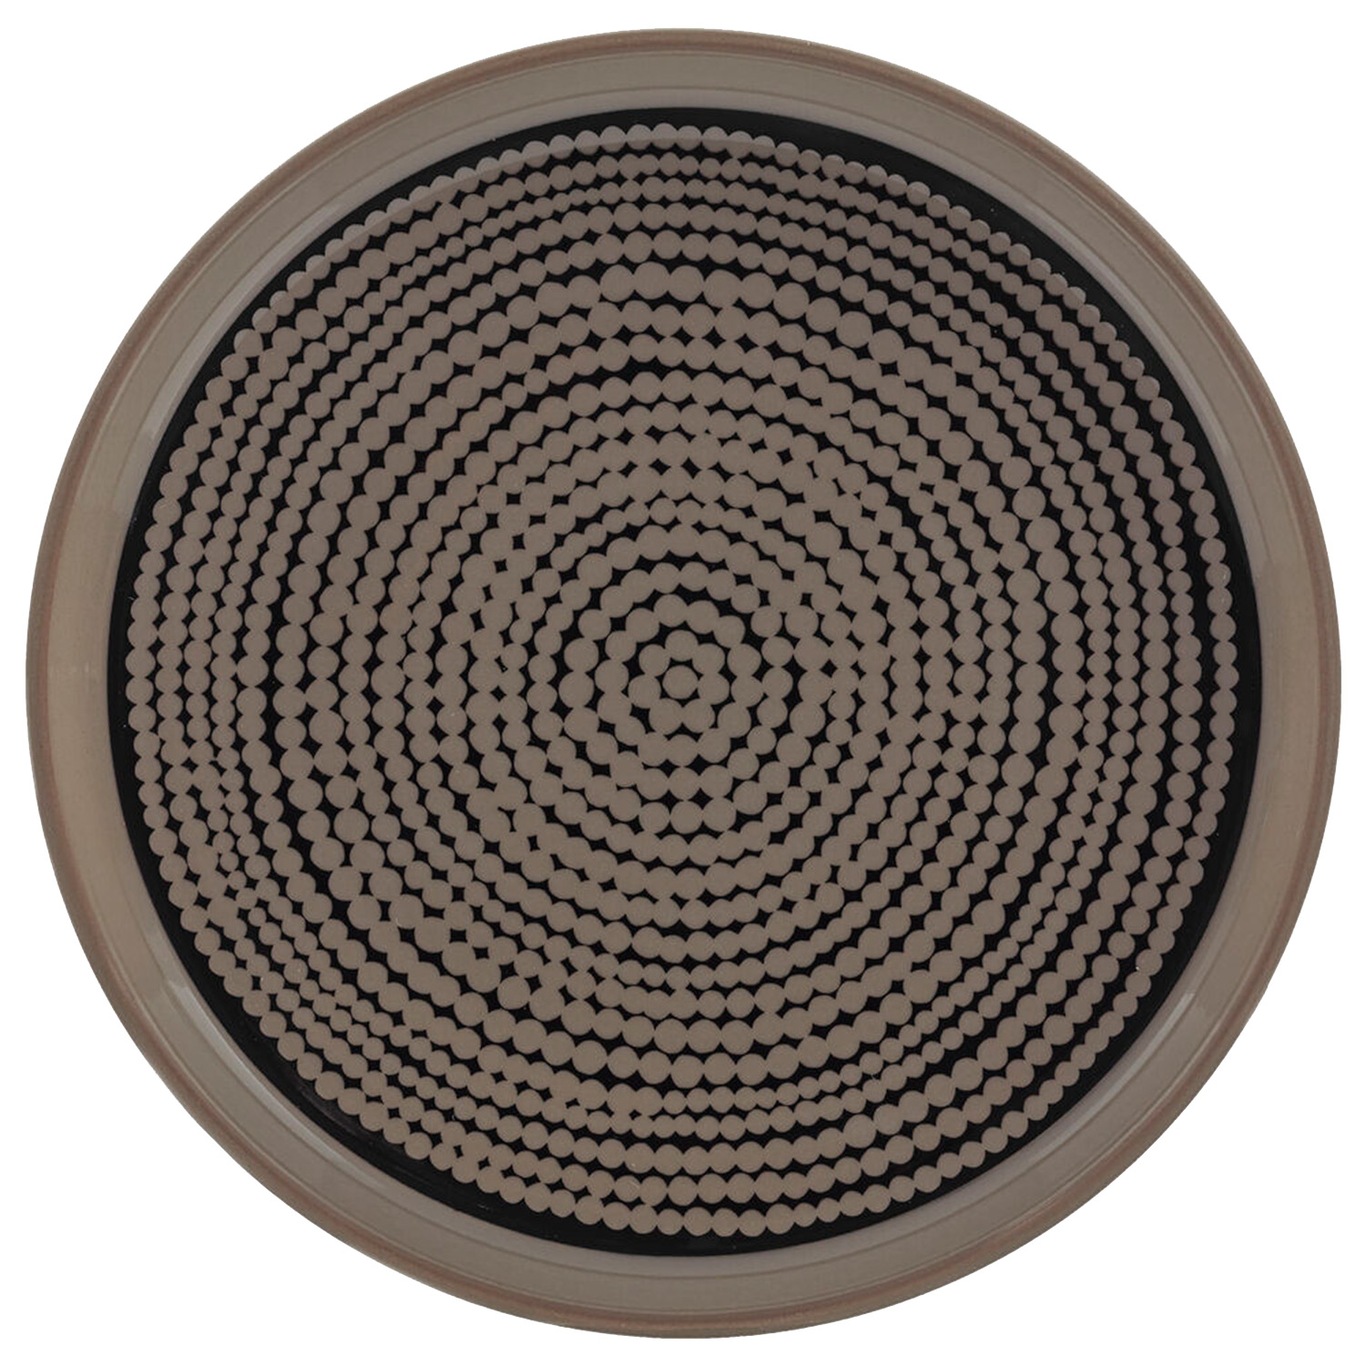 Oiva/Siirtolapuutarha Teller, Aus braunem Steingut mit einem sehr bekannten, gepunkteten Muster hergestellt 13,5 cm, Schwarz/Terra